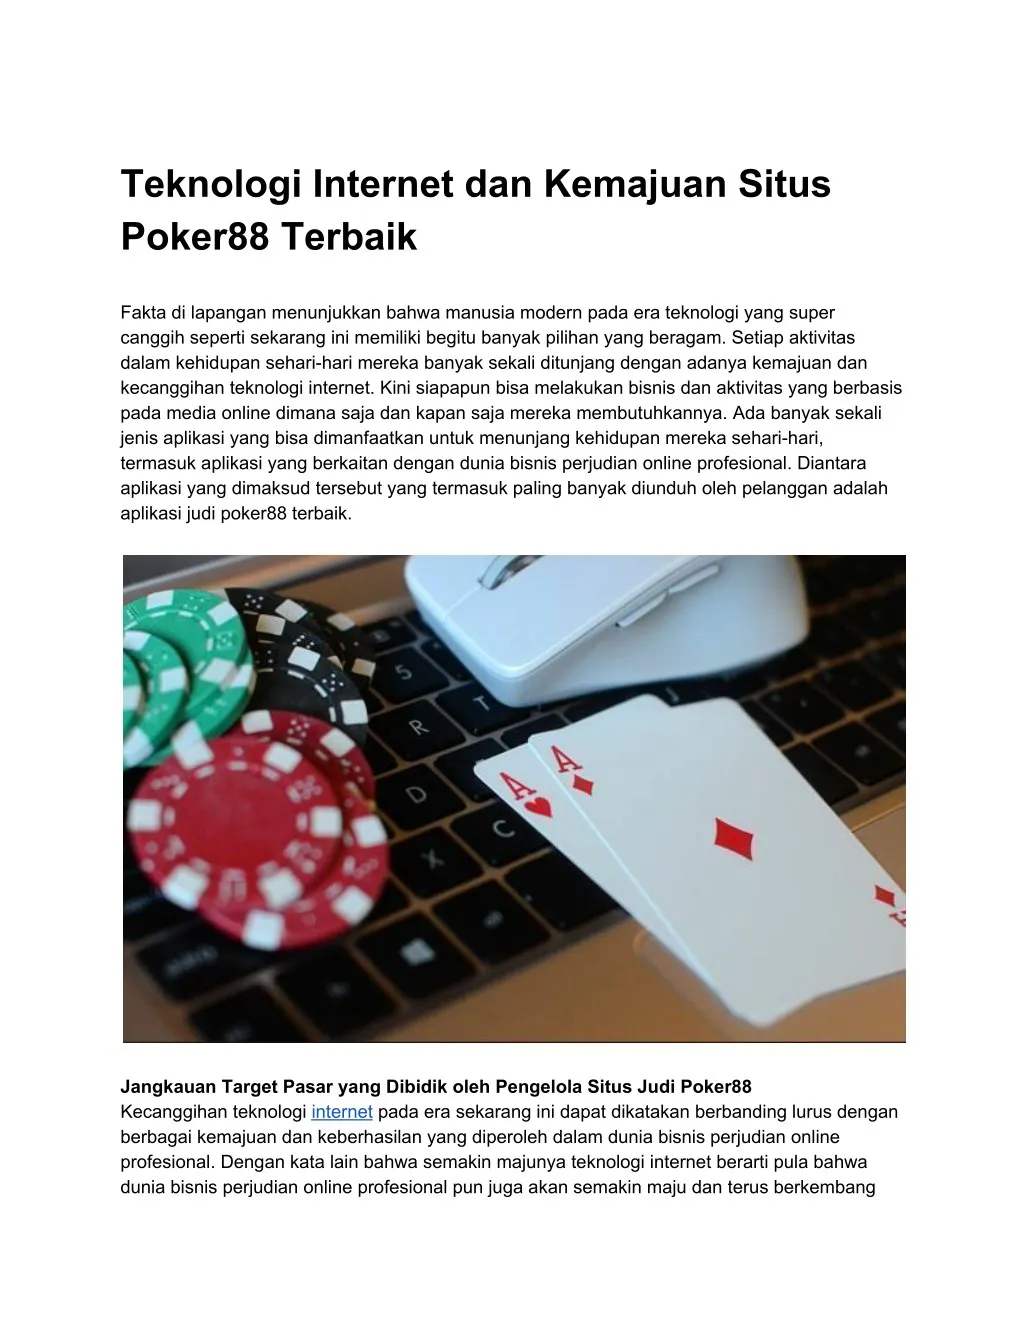 teknologi internet dan kemajuan situs poker88